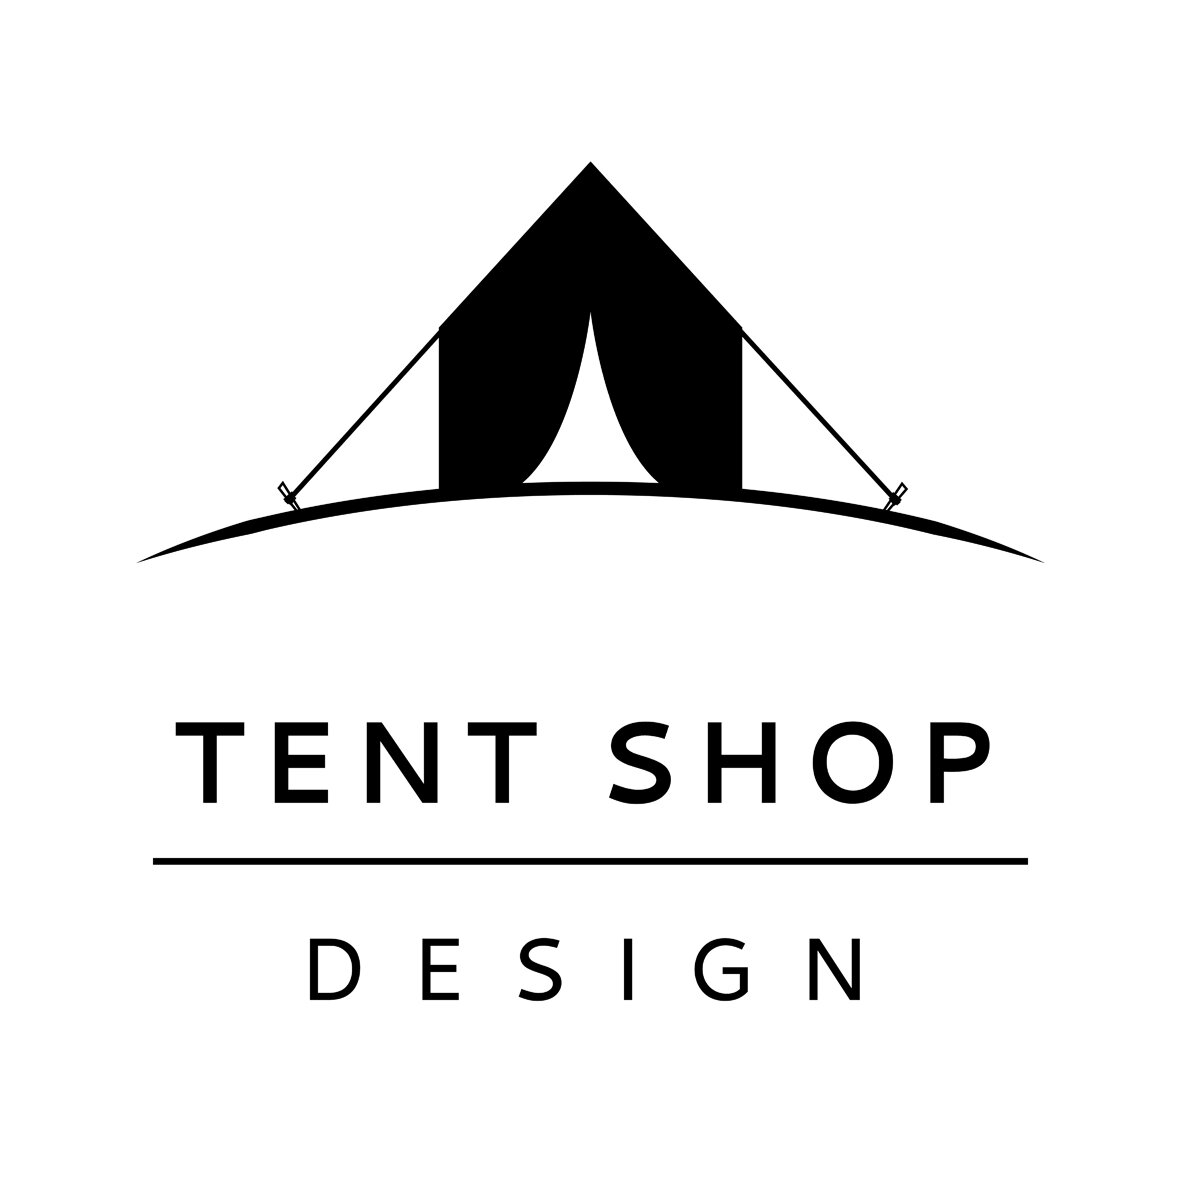 Tent Shop Design